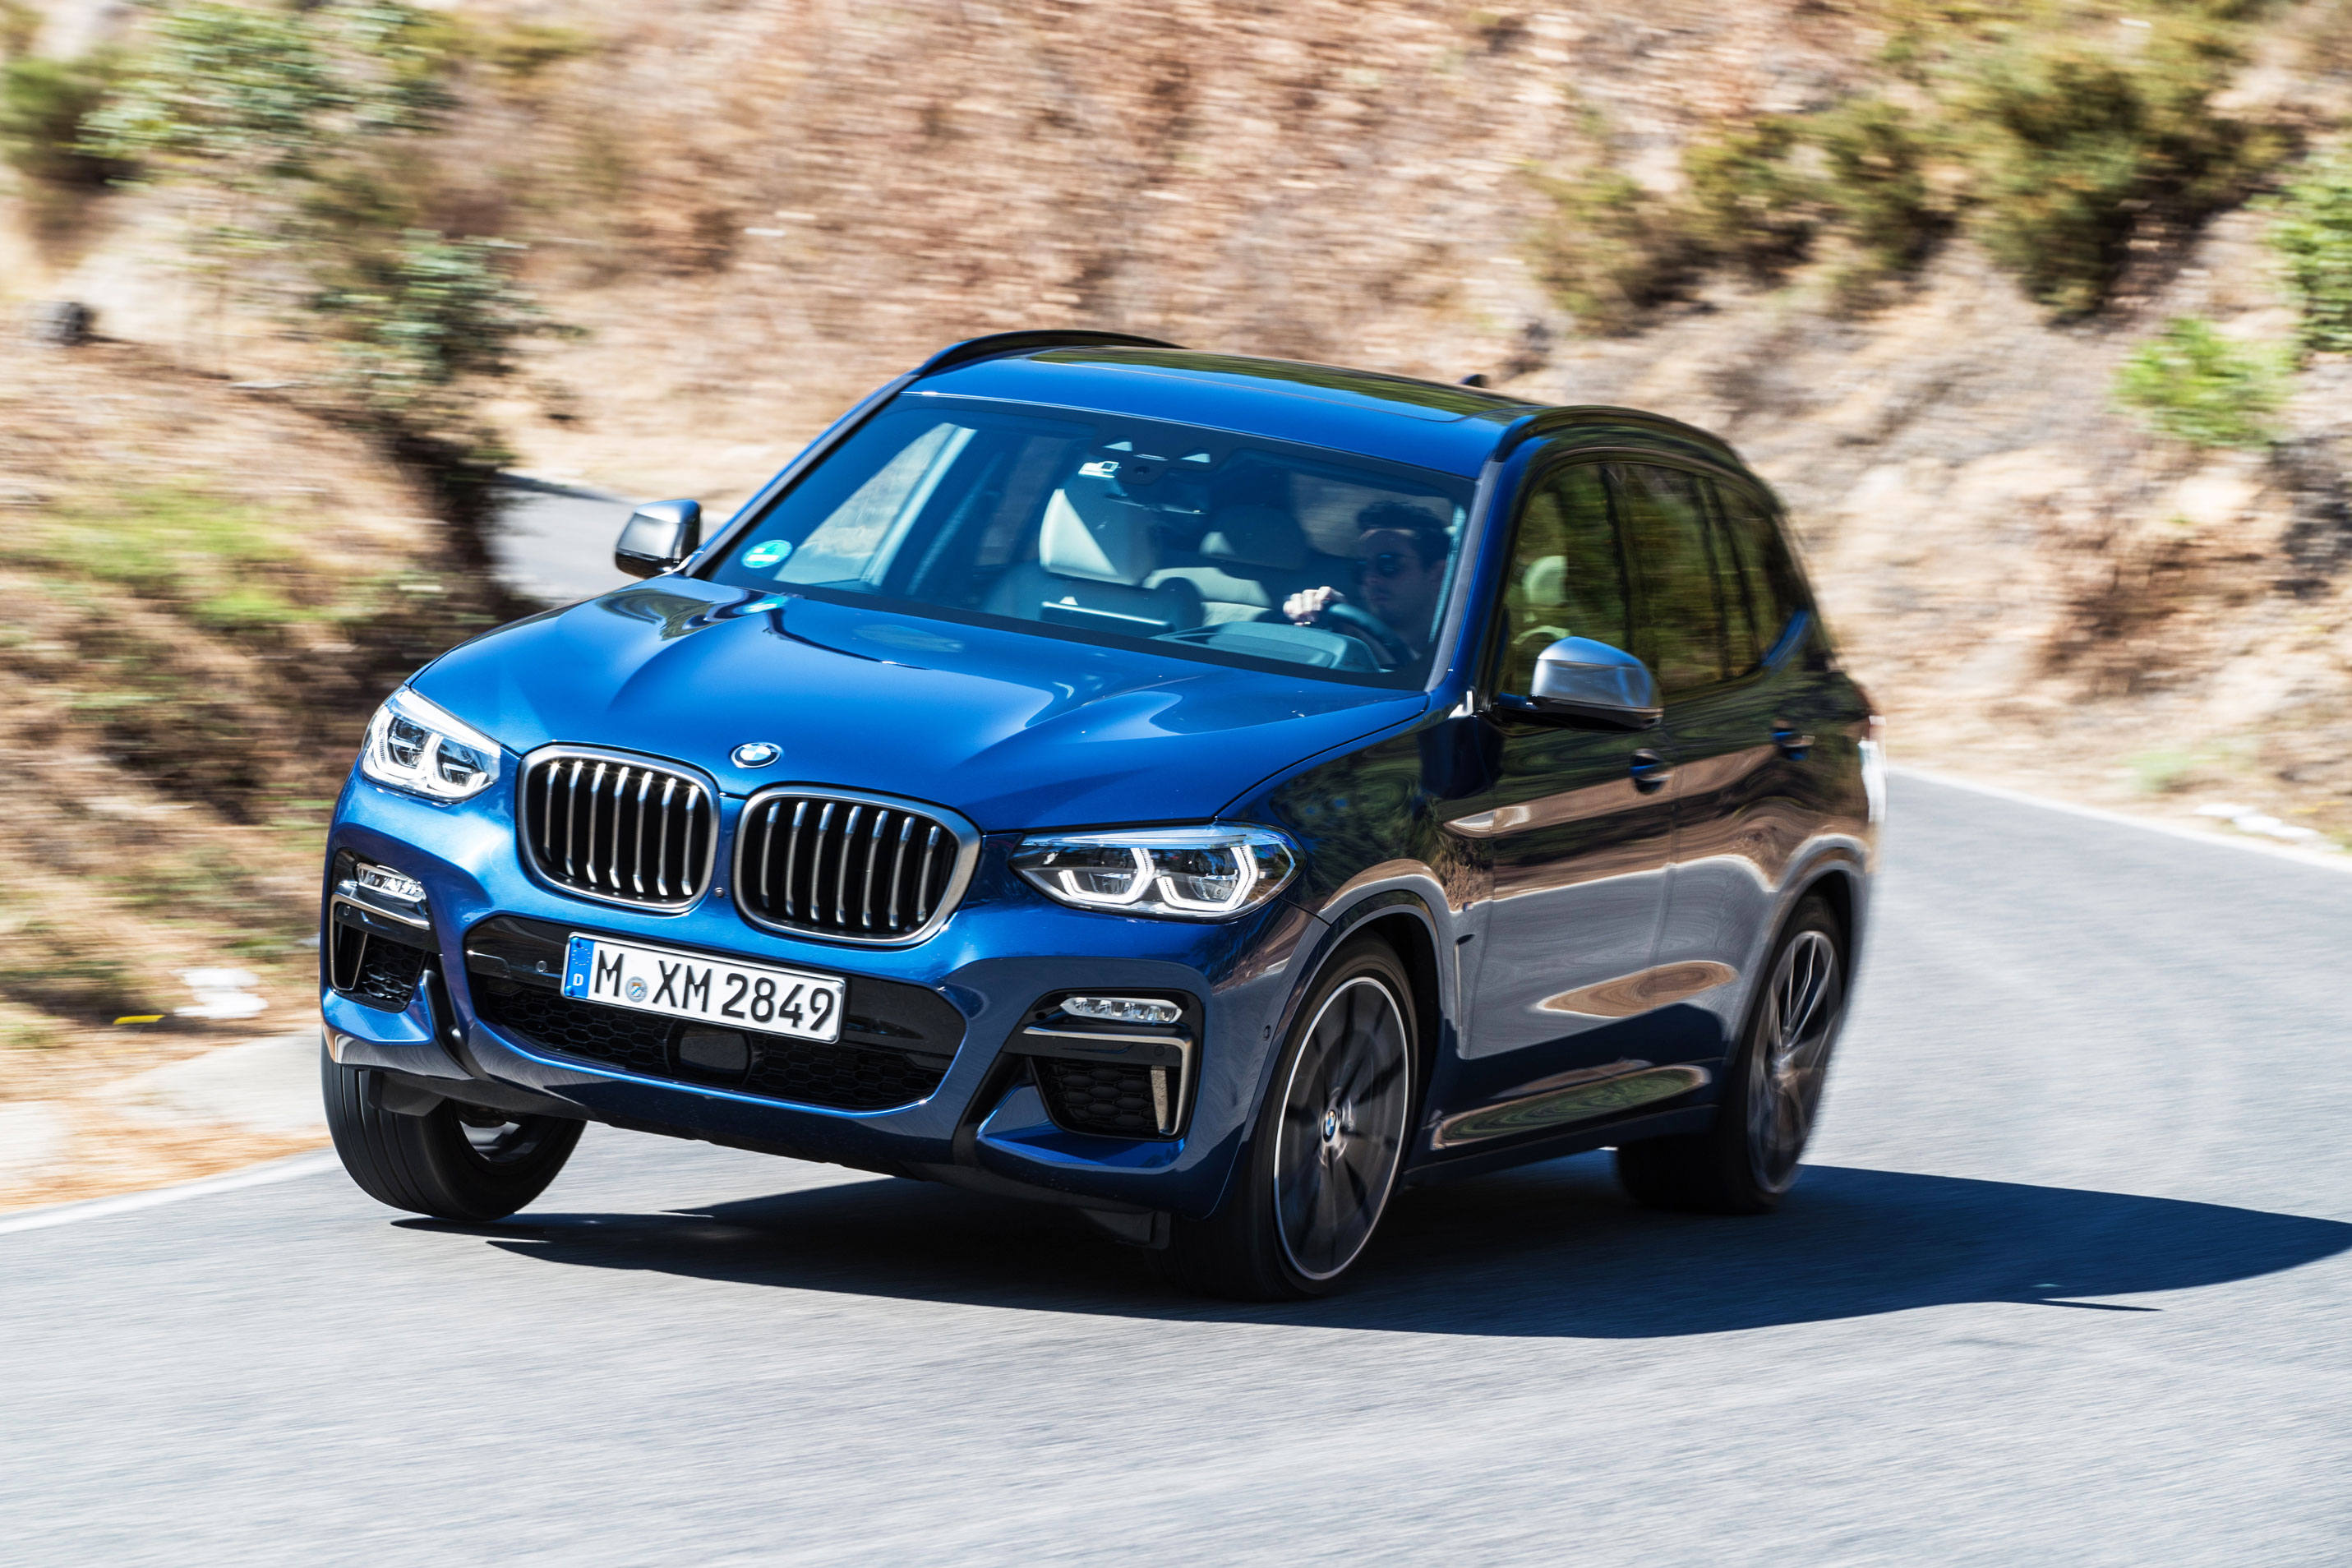 BMW X3 M40i review – BMW’s latest performance SUV | evo